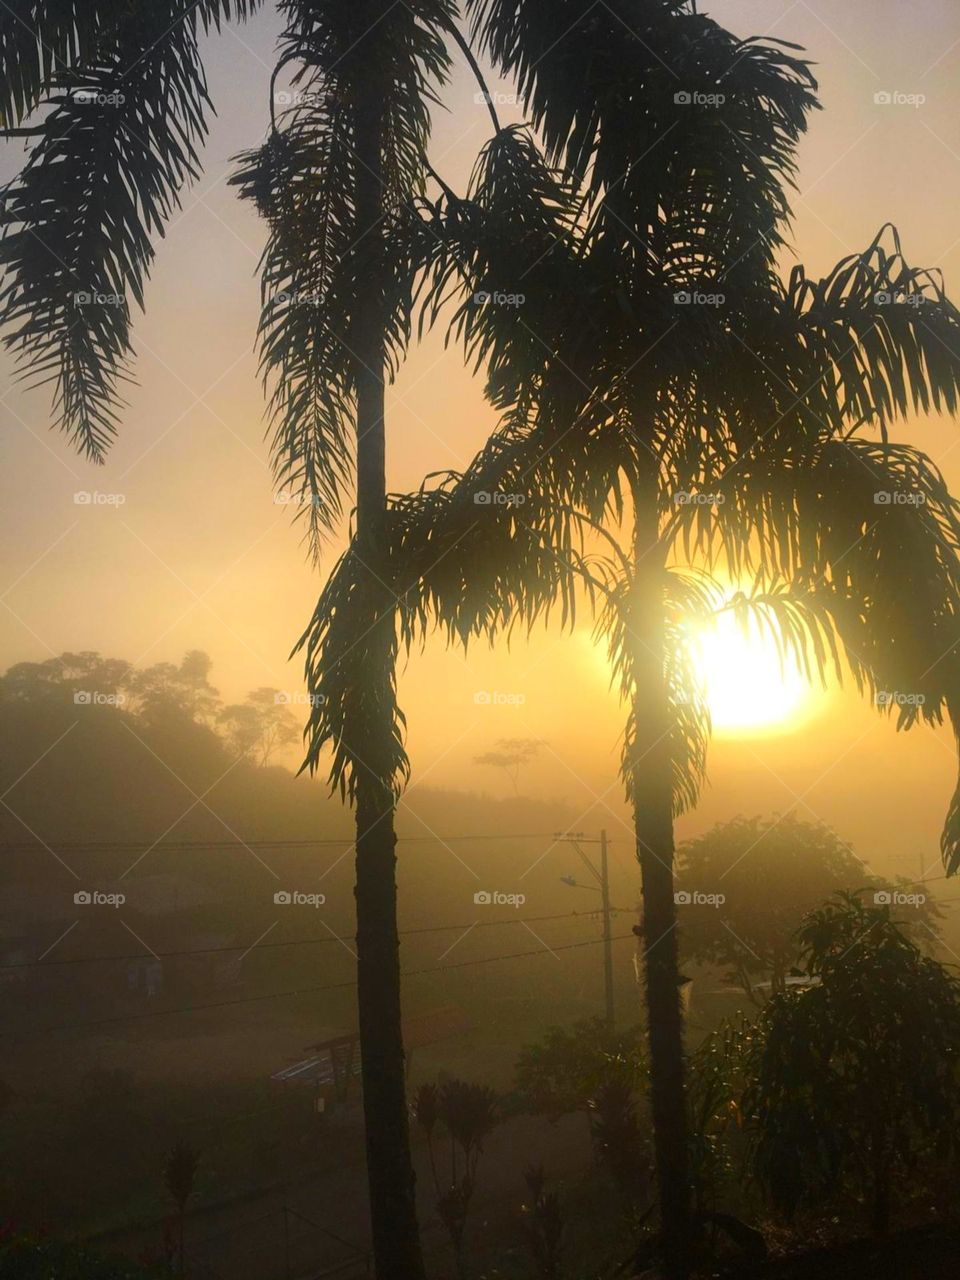 Si estuvieras en la Amazonía Ecuatoriana verías cada mañana un amanecer de estos, con un sol radiante que cobija a la naturaleza a su paso. 💛💥